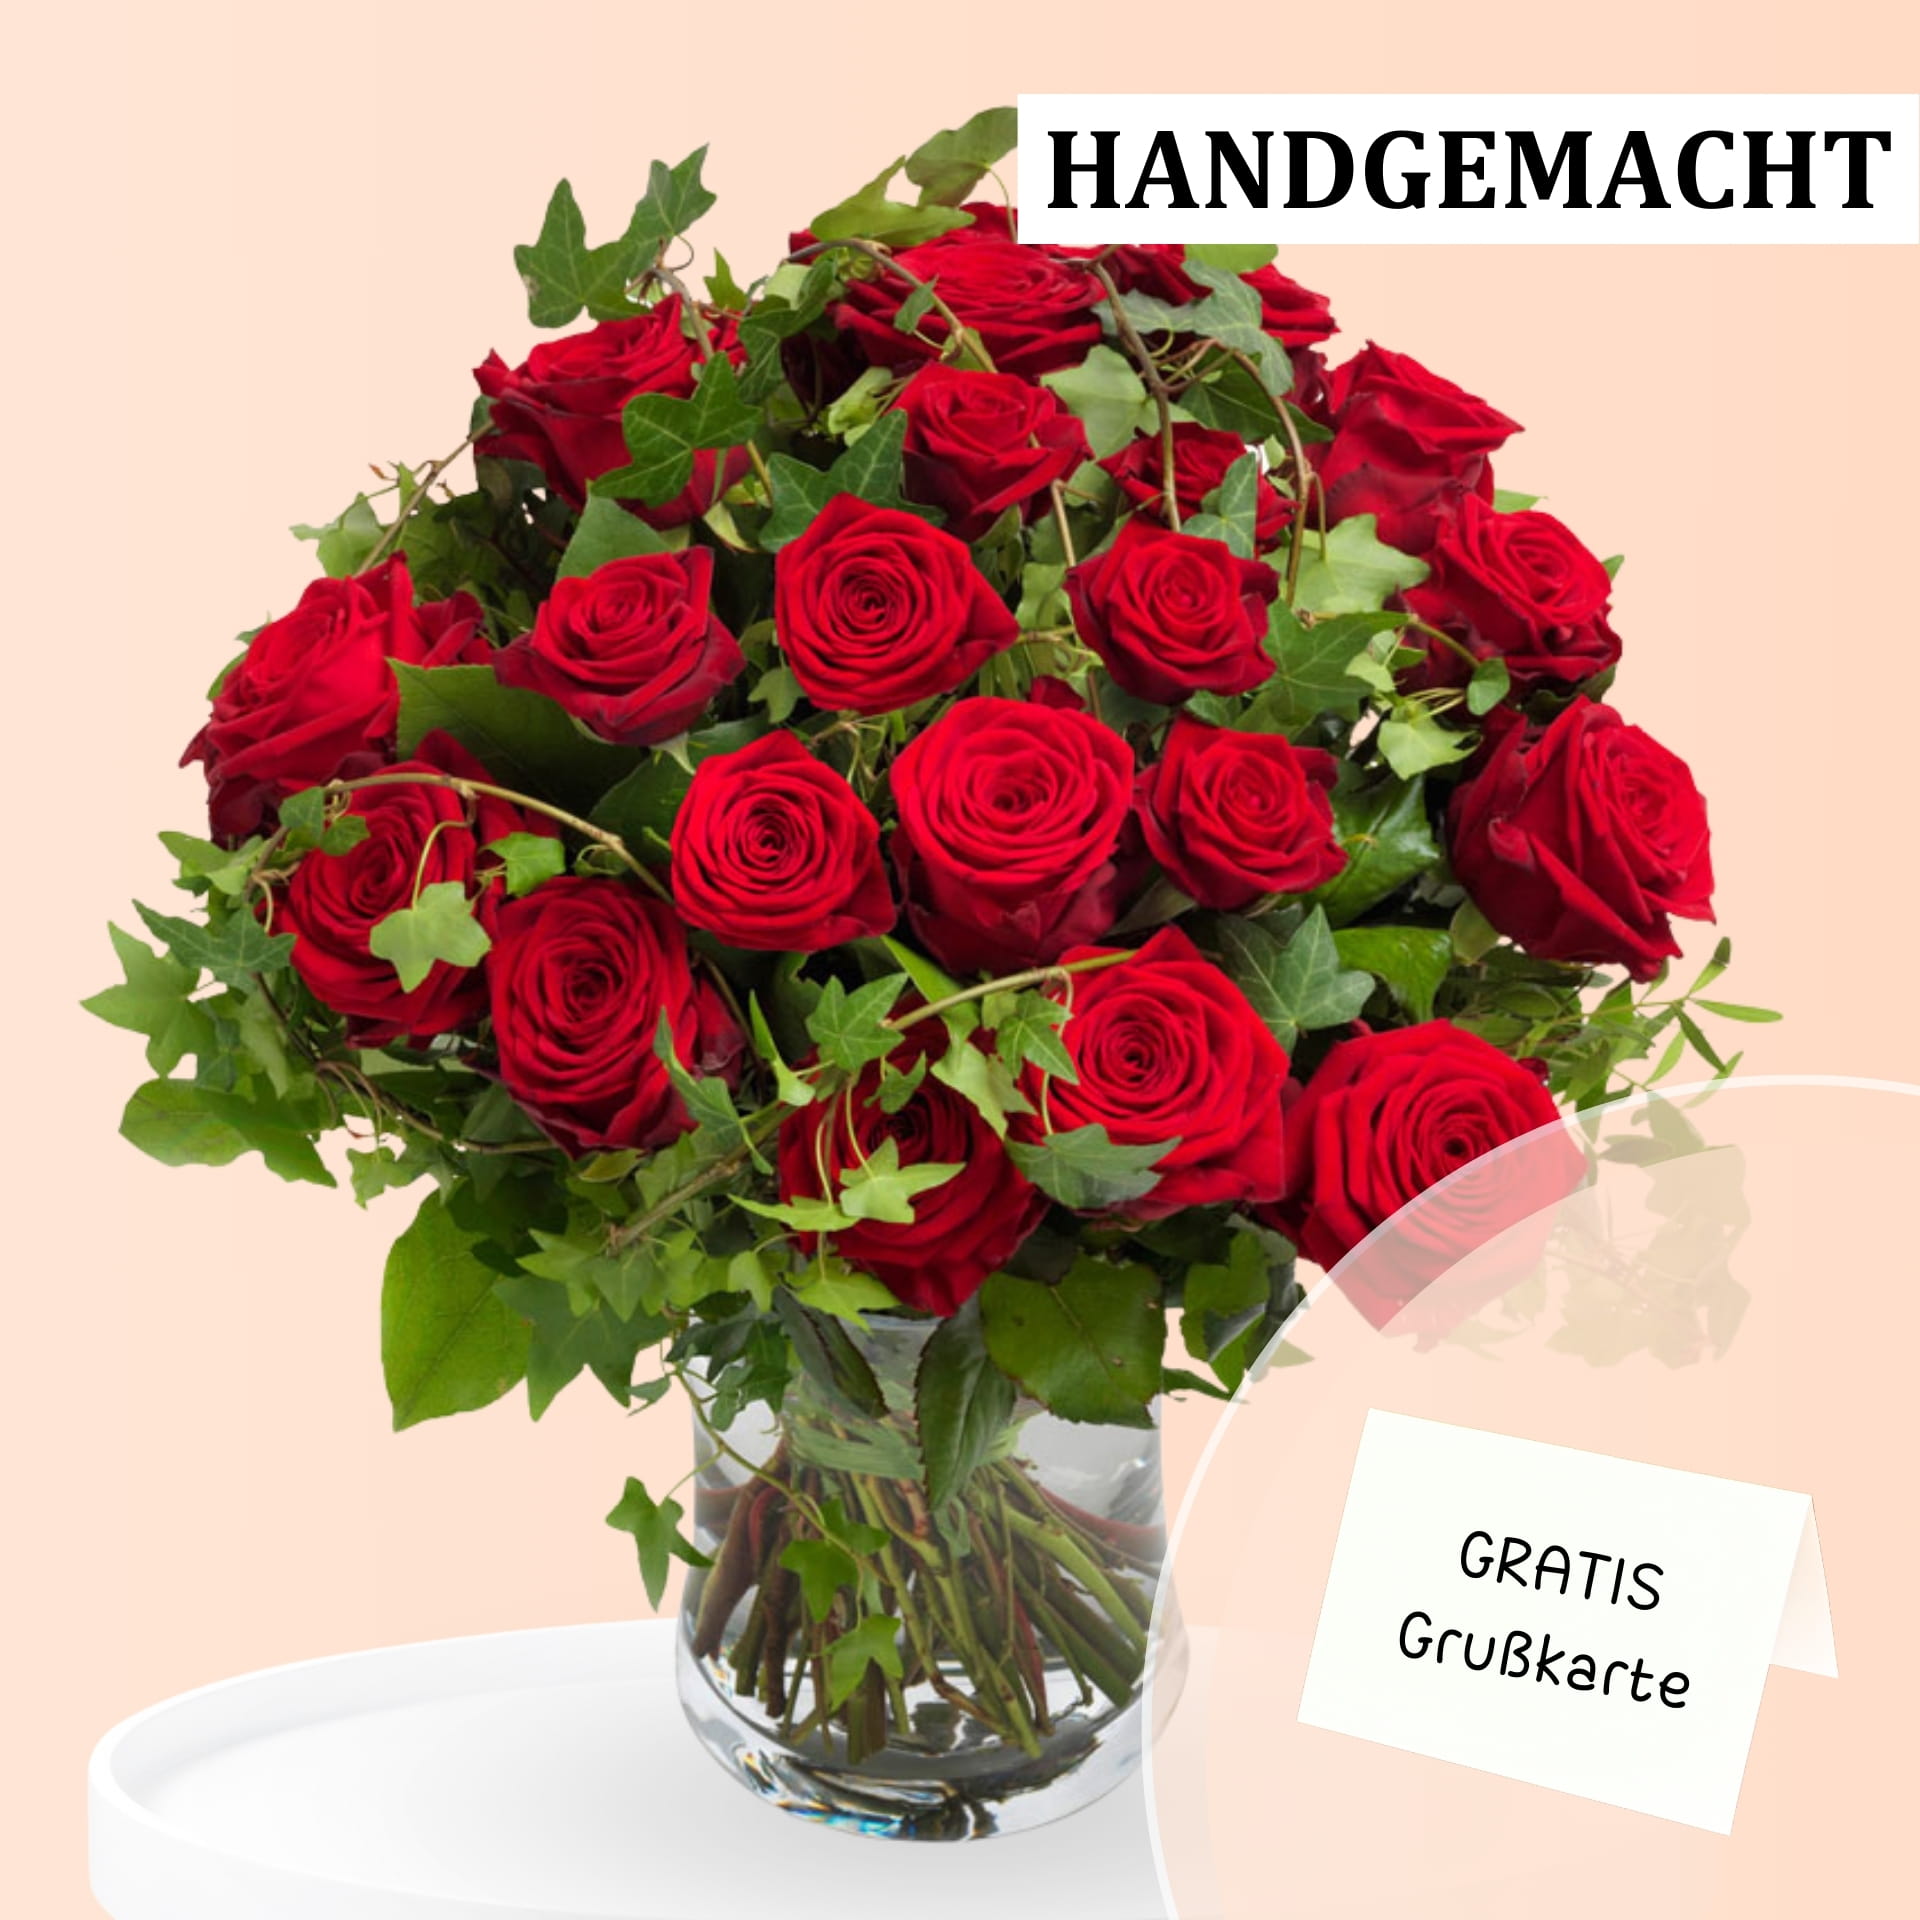 Großes Bouquet aus roten Rosen in einer Glasvase und einer gratis Grußkarte